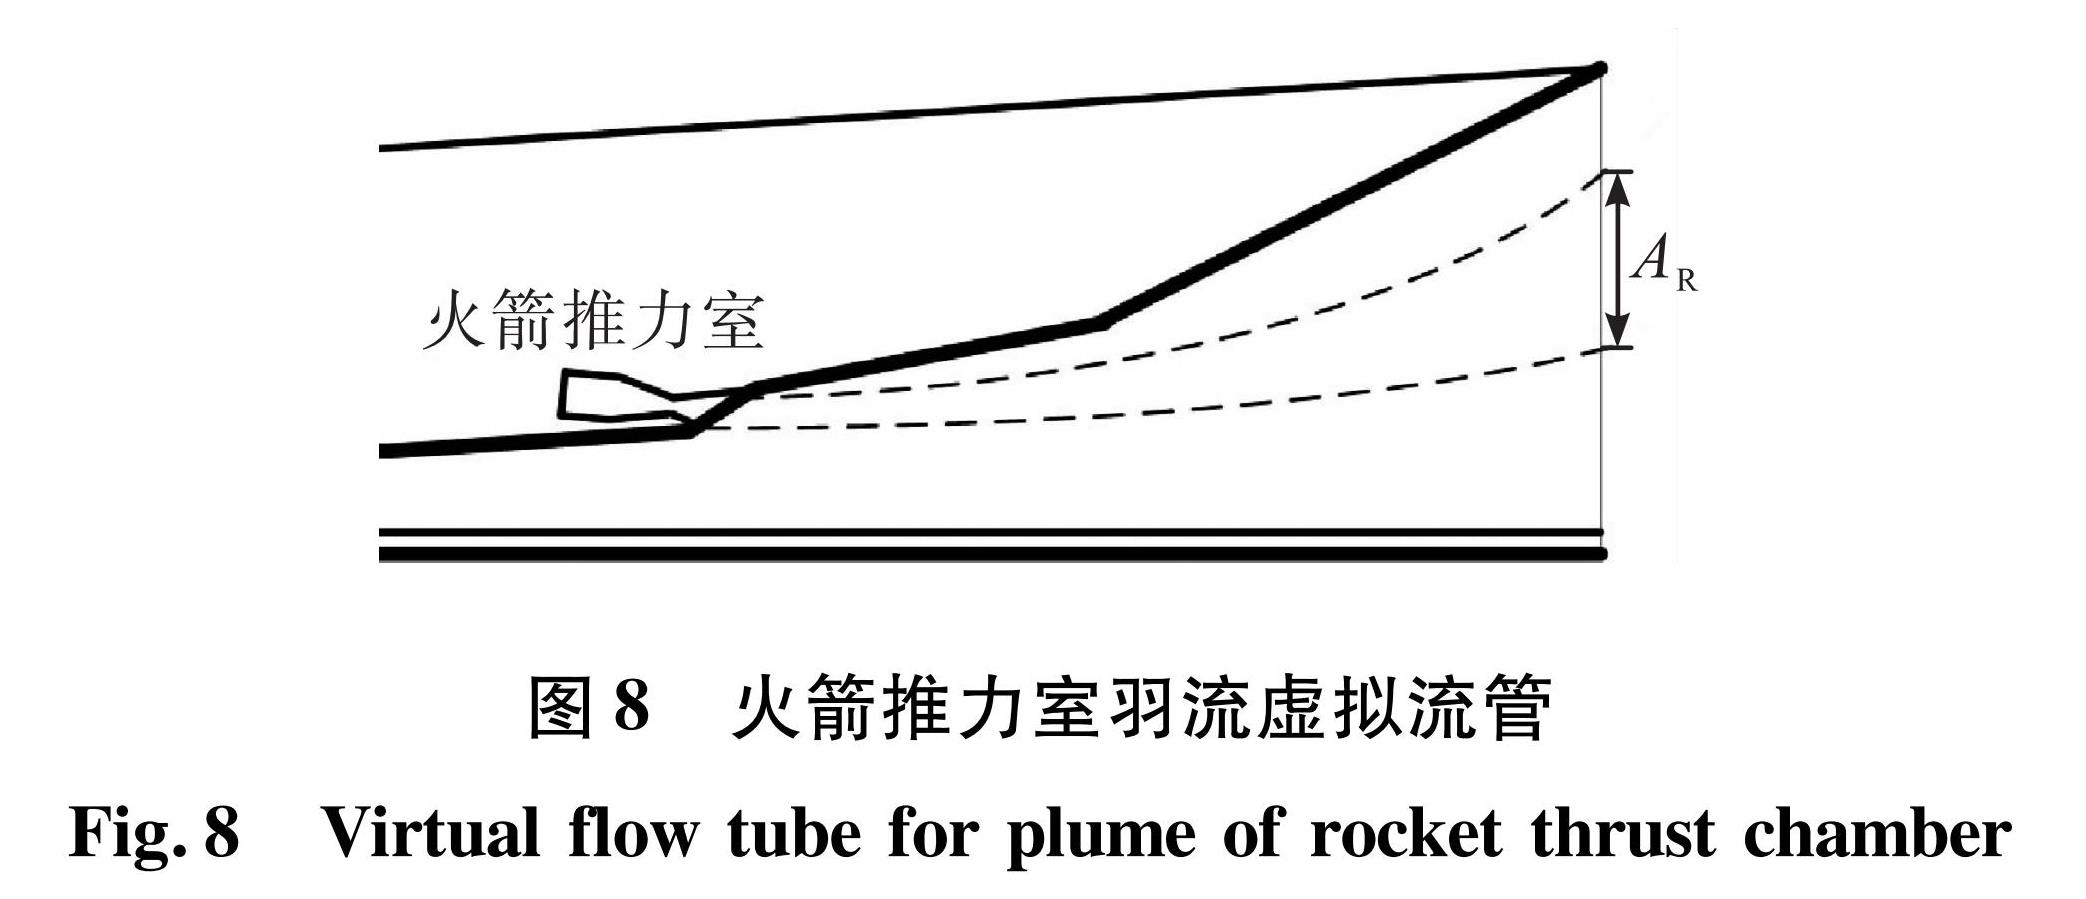 图8 火箭推力室羽流虚拟流管<br/>Fig.8 Virtual flow tube for plume of rocket thrust chamber